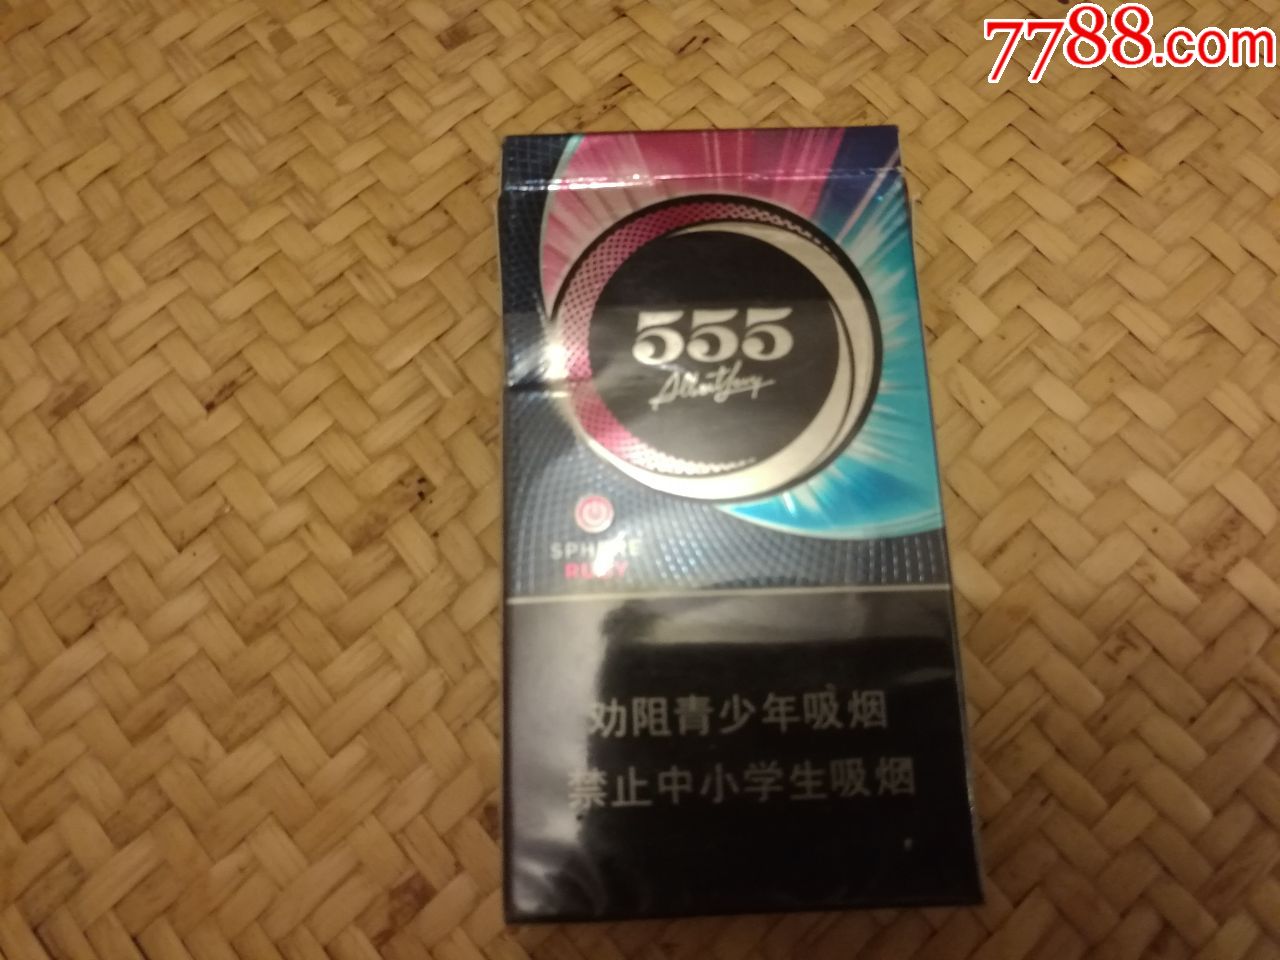 555冰炫烟盒1个